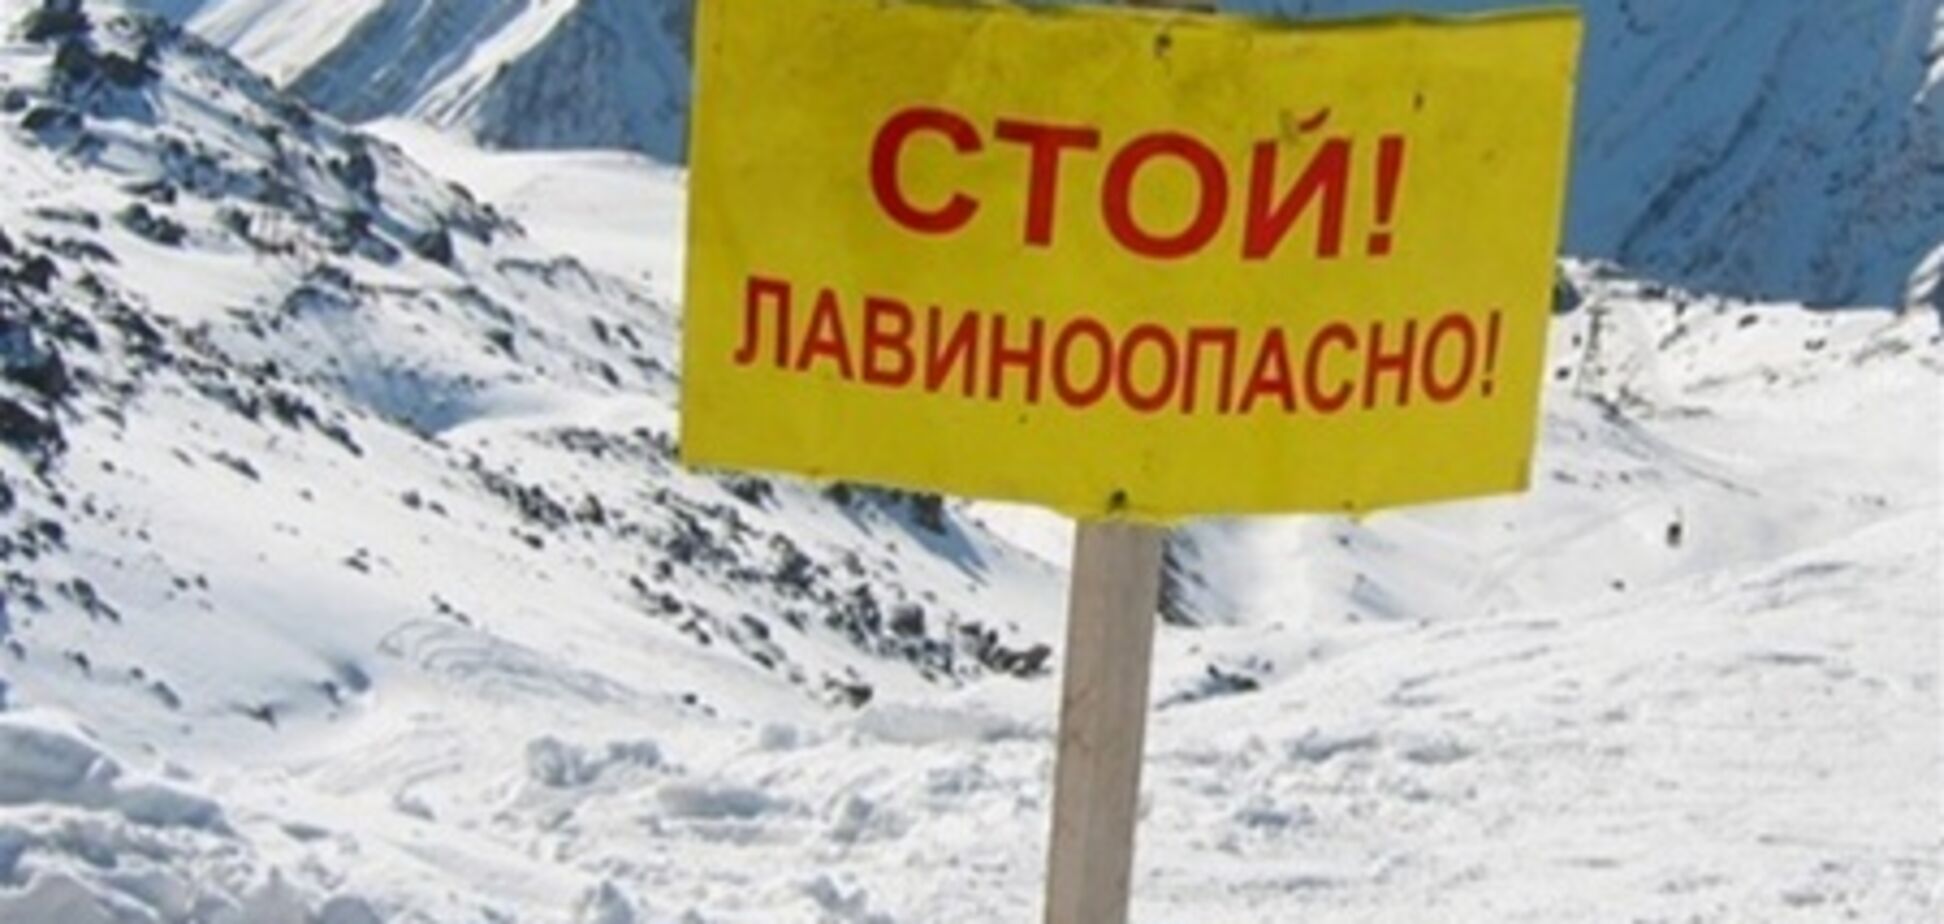 Прикарпатью и Буковине угрожает сход лавин